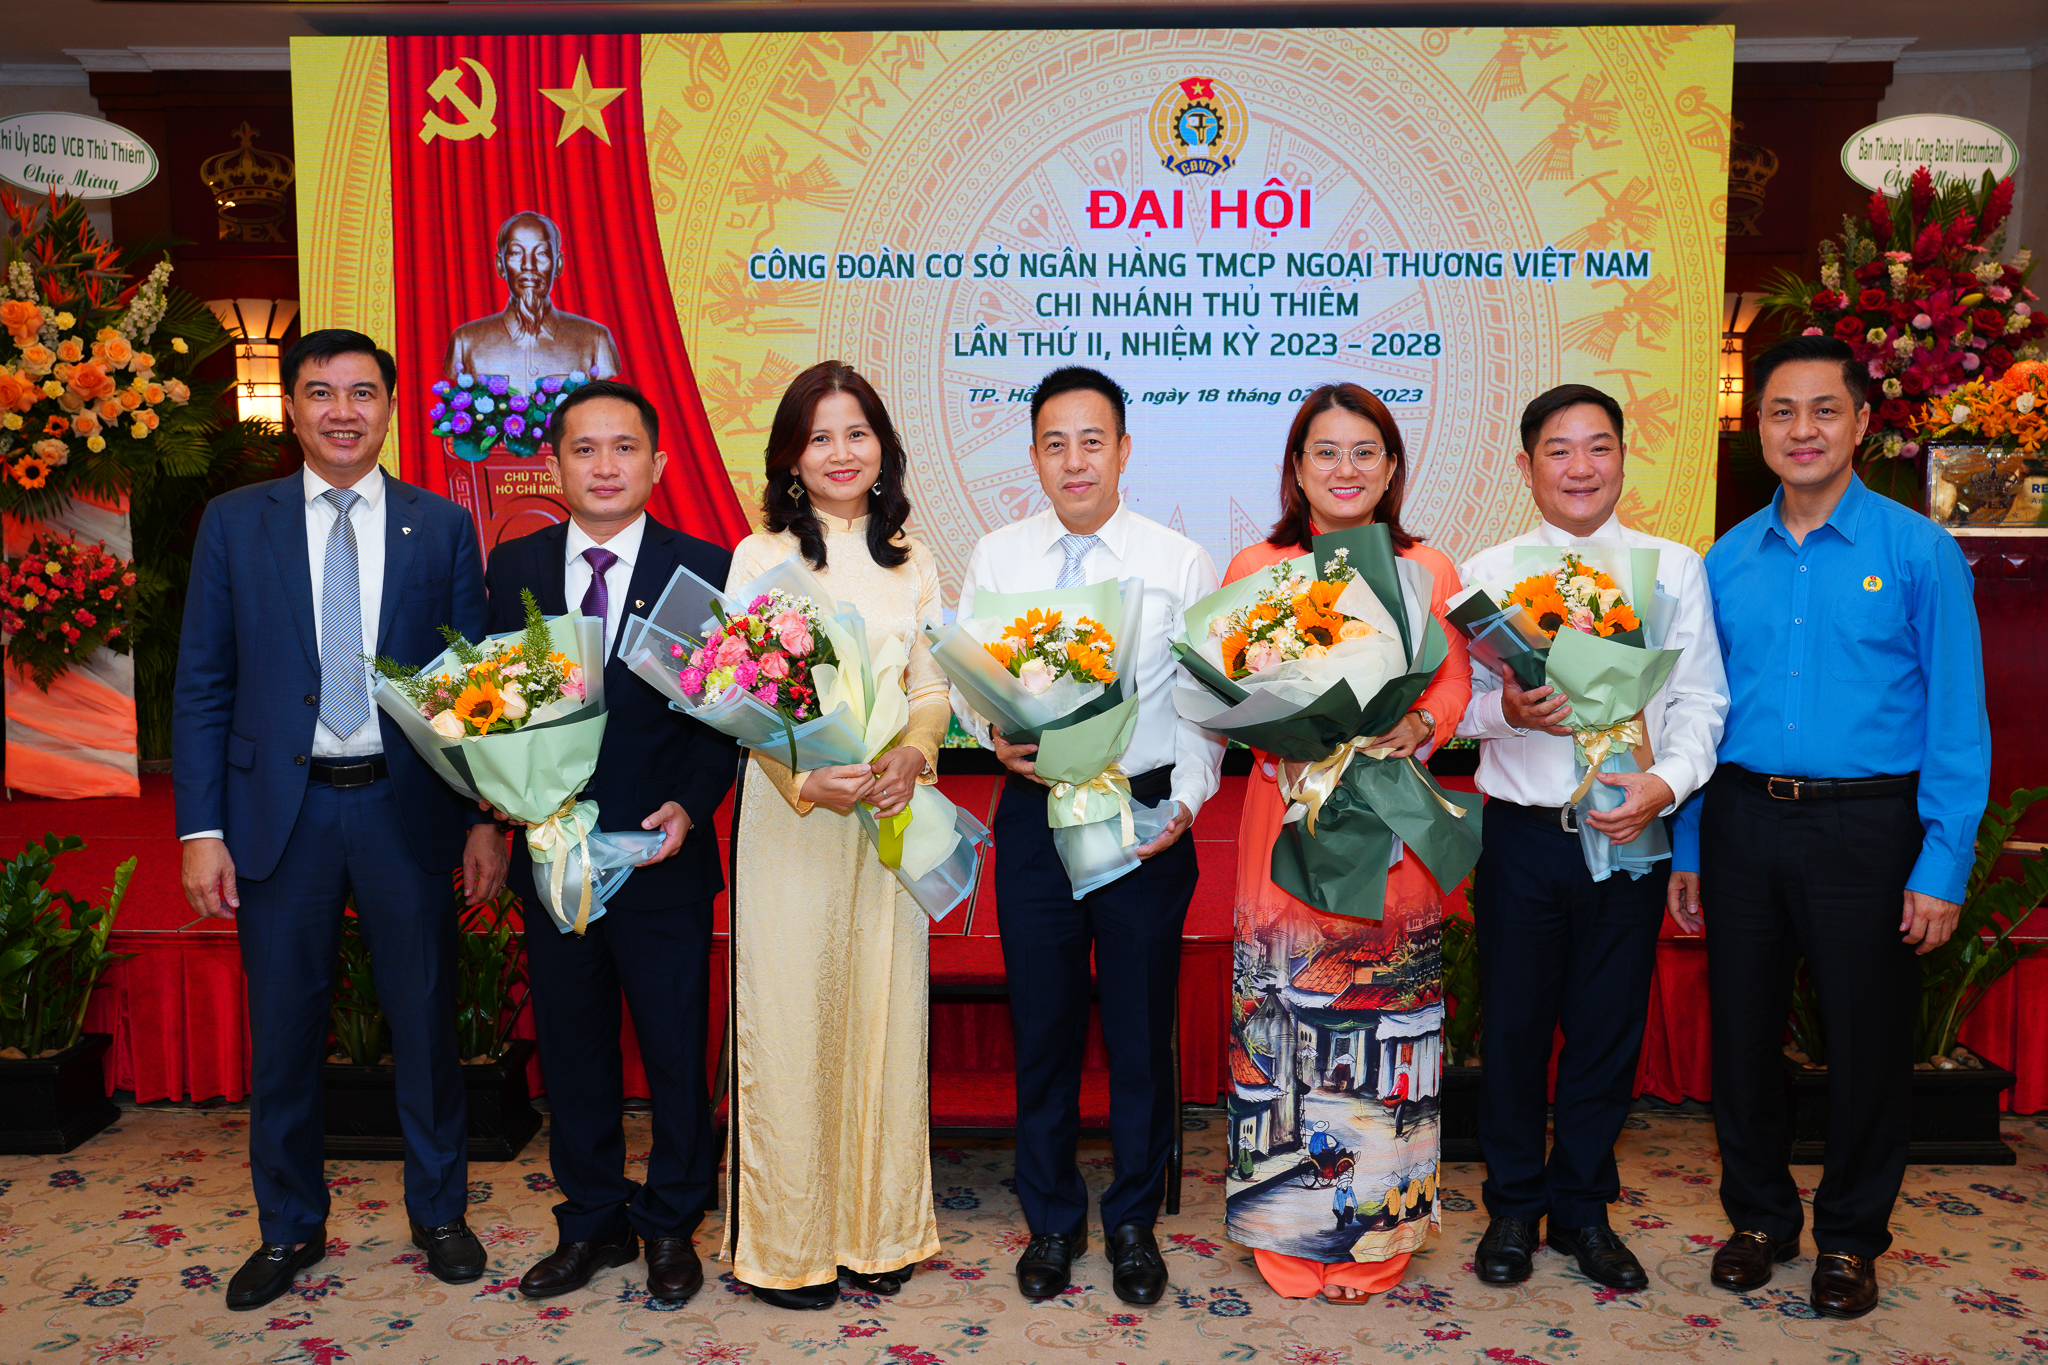 Vietcombank Thủ Thiêm tổ chức thành công Đại hội Công đoàn cơ sở lần thứ II,  nhiệm kỳ 2023 - 2028 